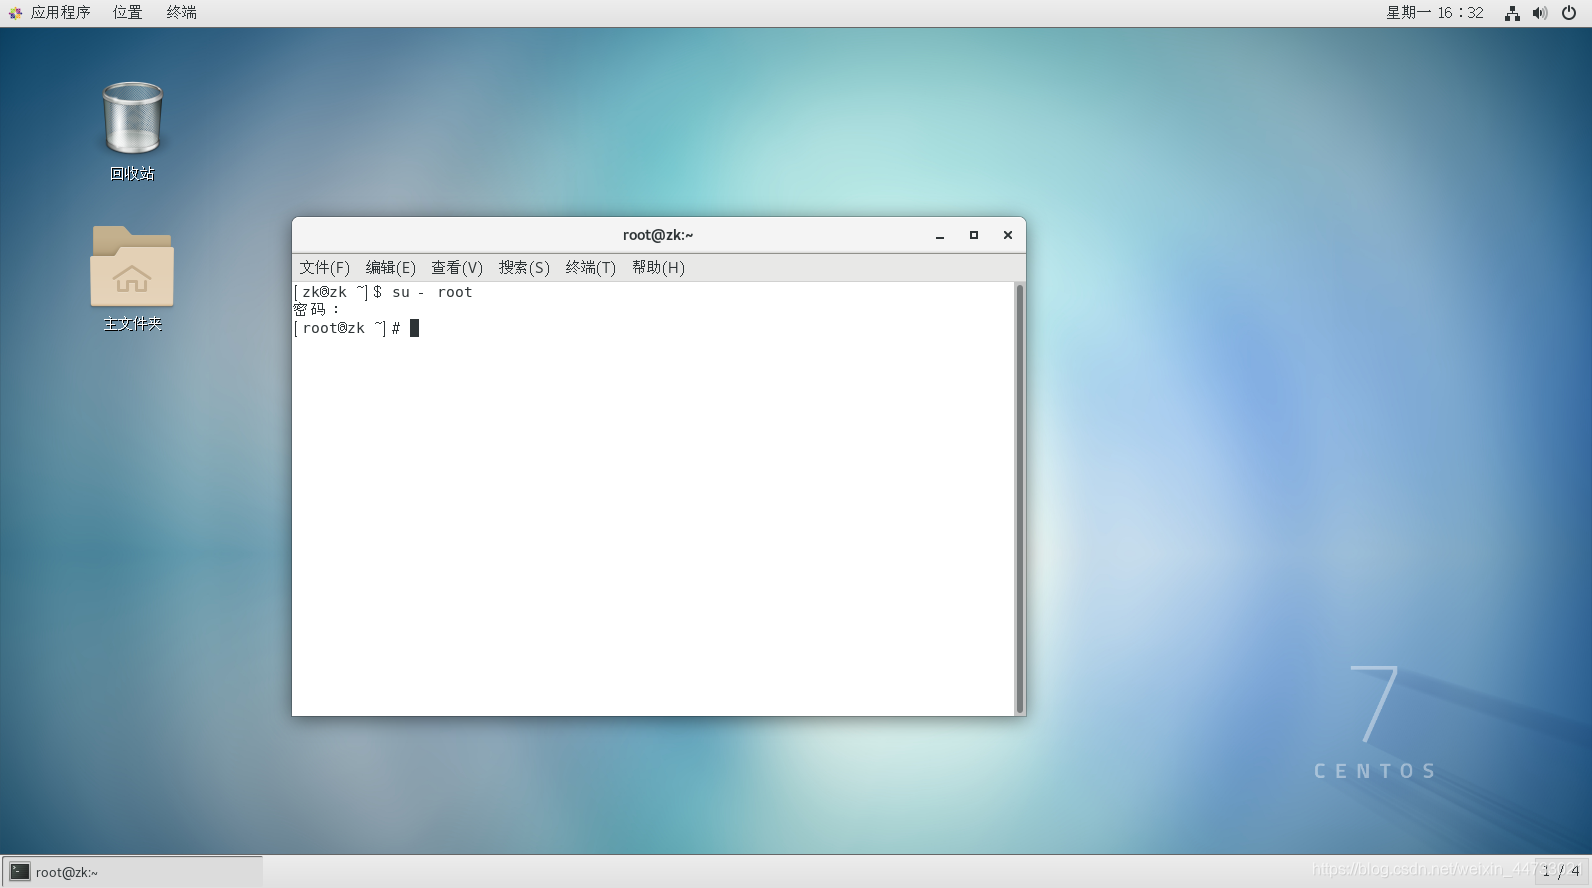 虚拟机中安装Linux系统CentOS7超详细教程weixin44733021的博客-